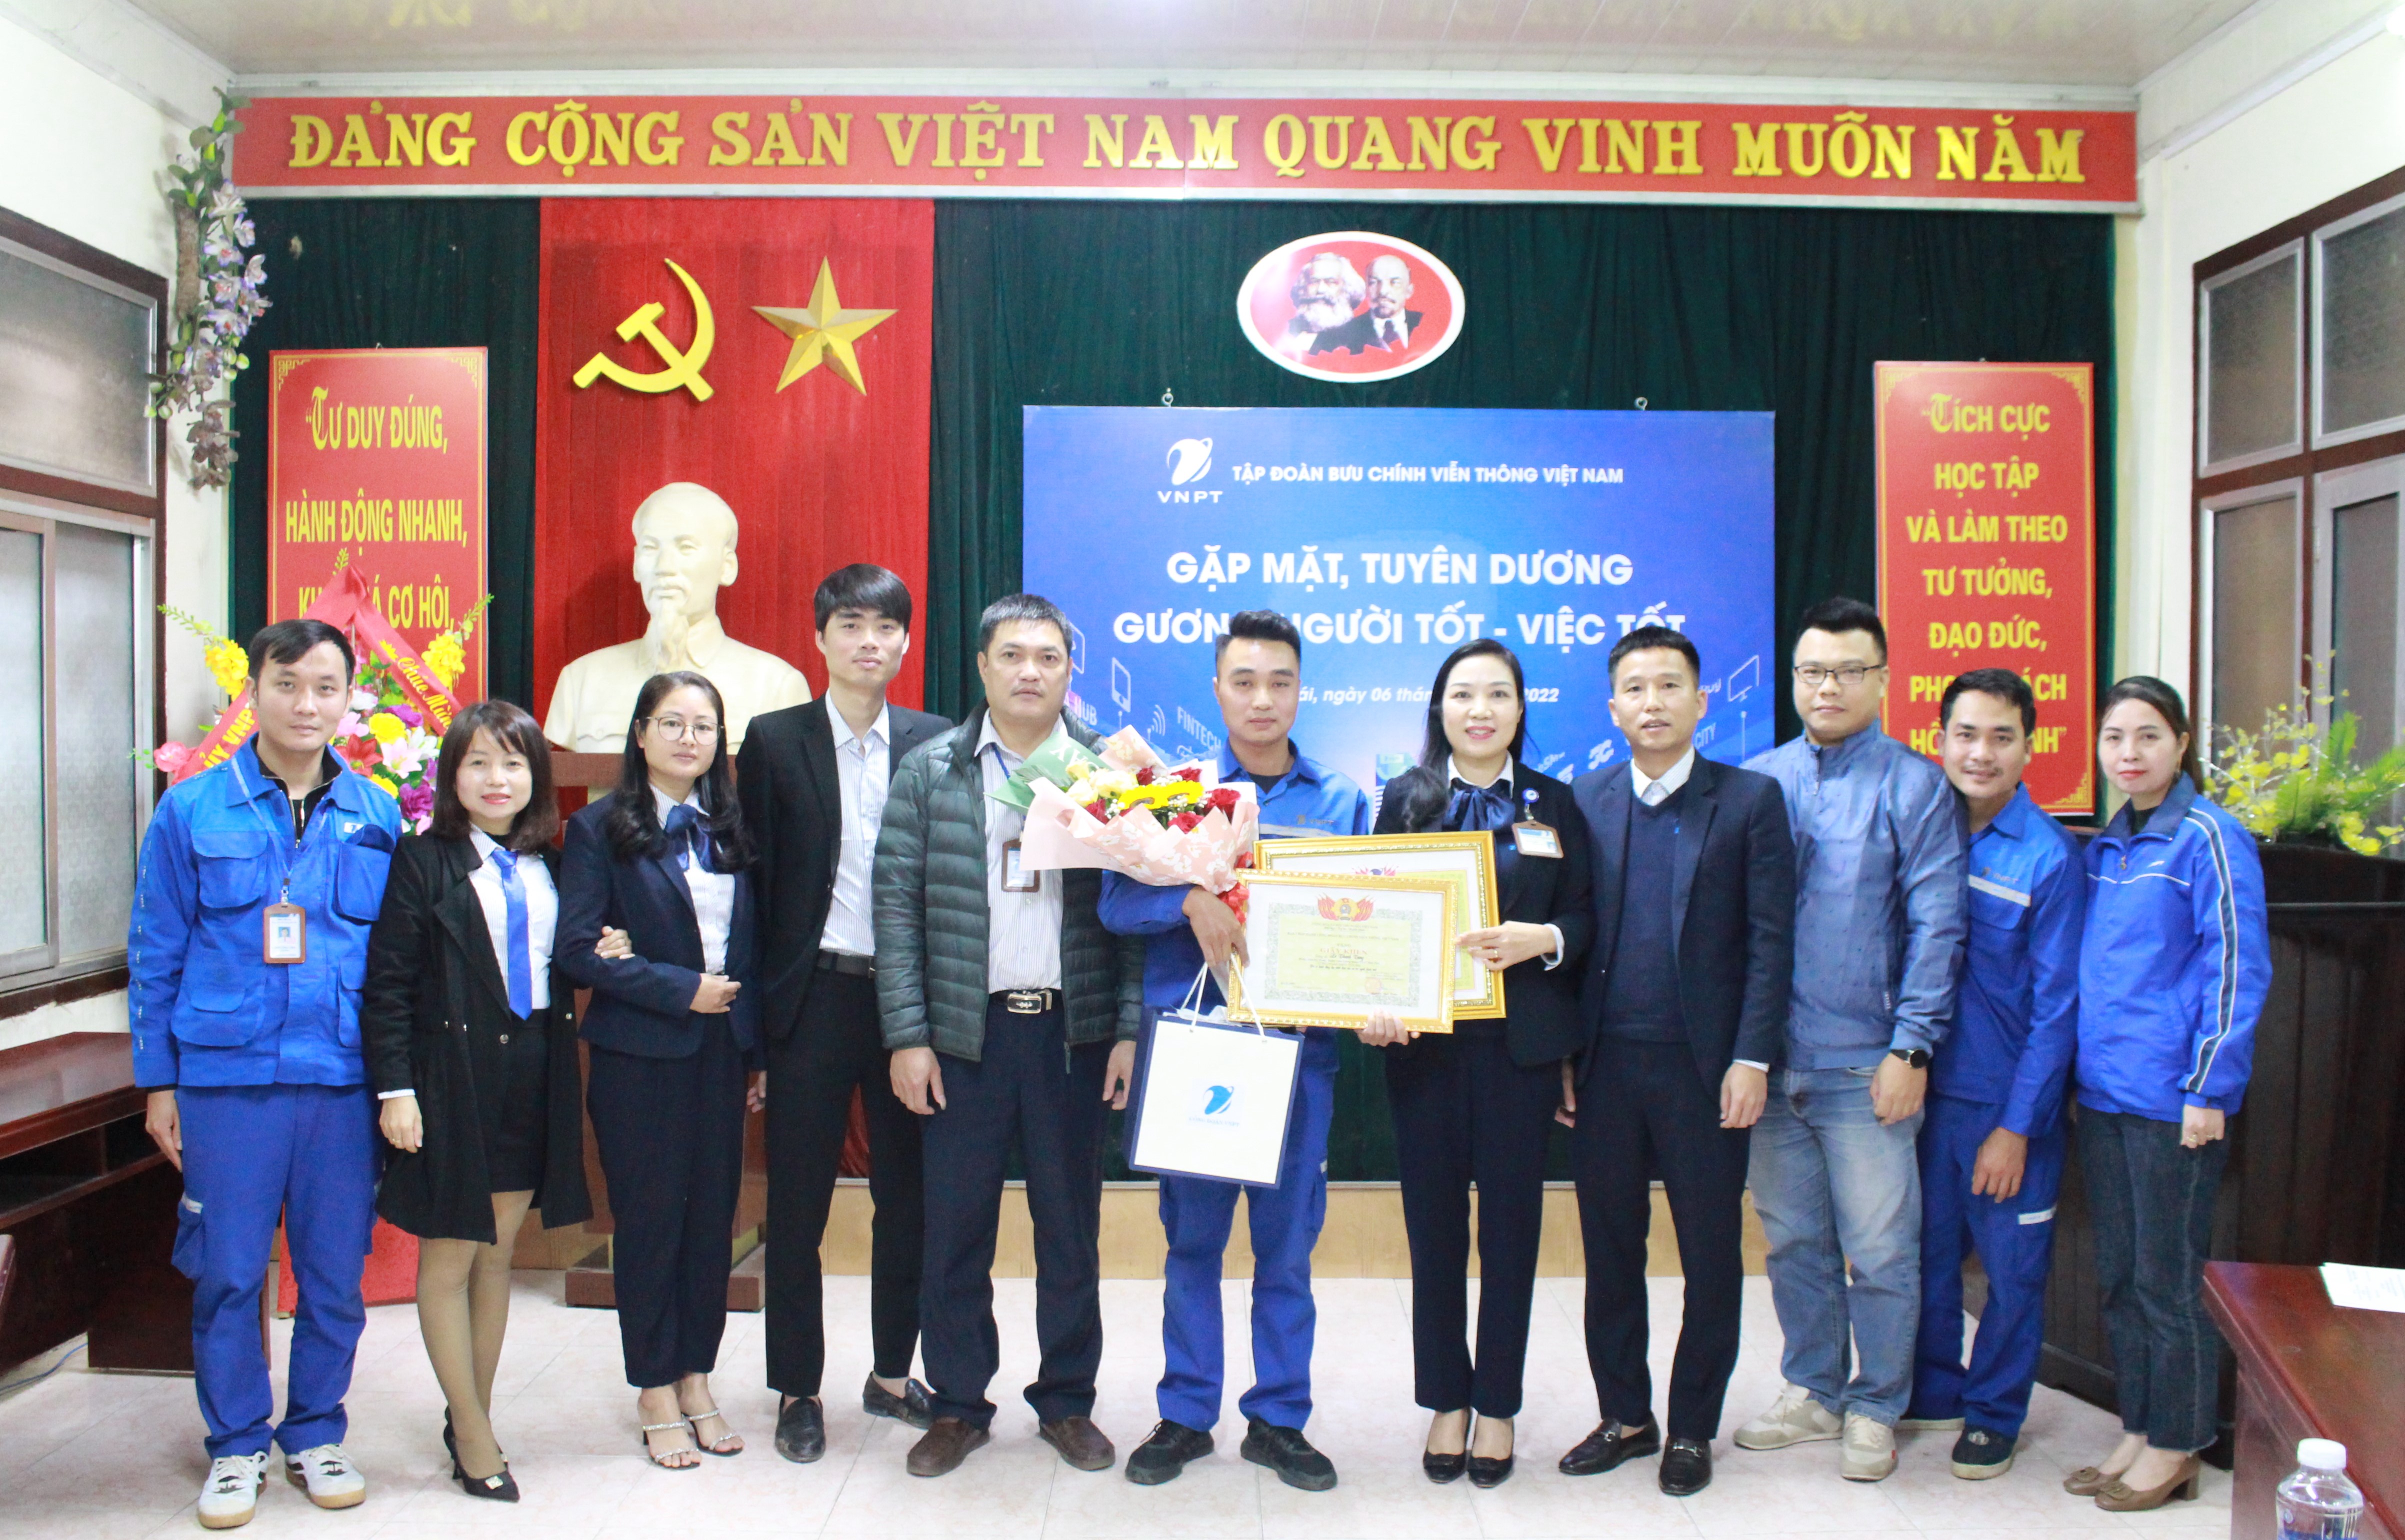 Khen thưởng nhân viên VNPT Yên Bái trả lại 550 triệu đồng cho người đánh rơi